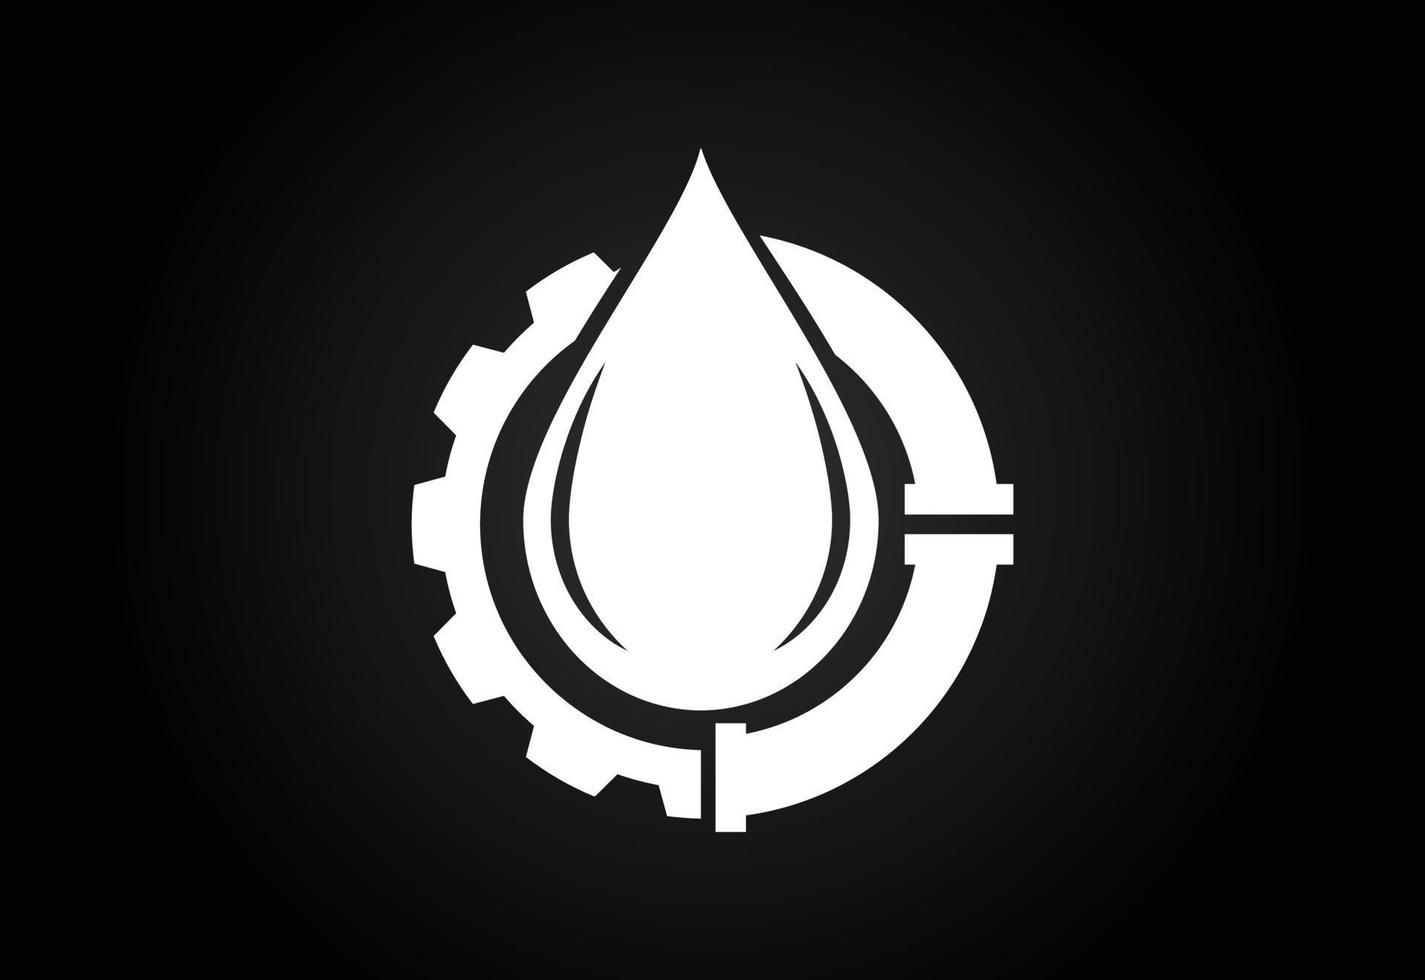 icono de llama de fuego en forma de gota. concepto de diseño del logotipo de la industria del petróleo y el gas. vector